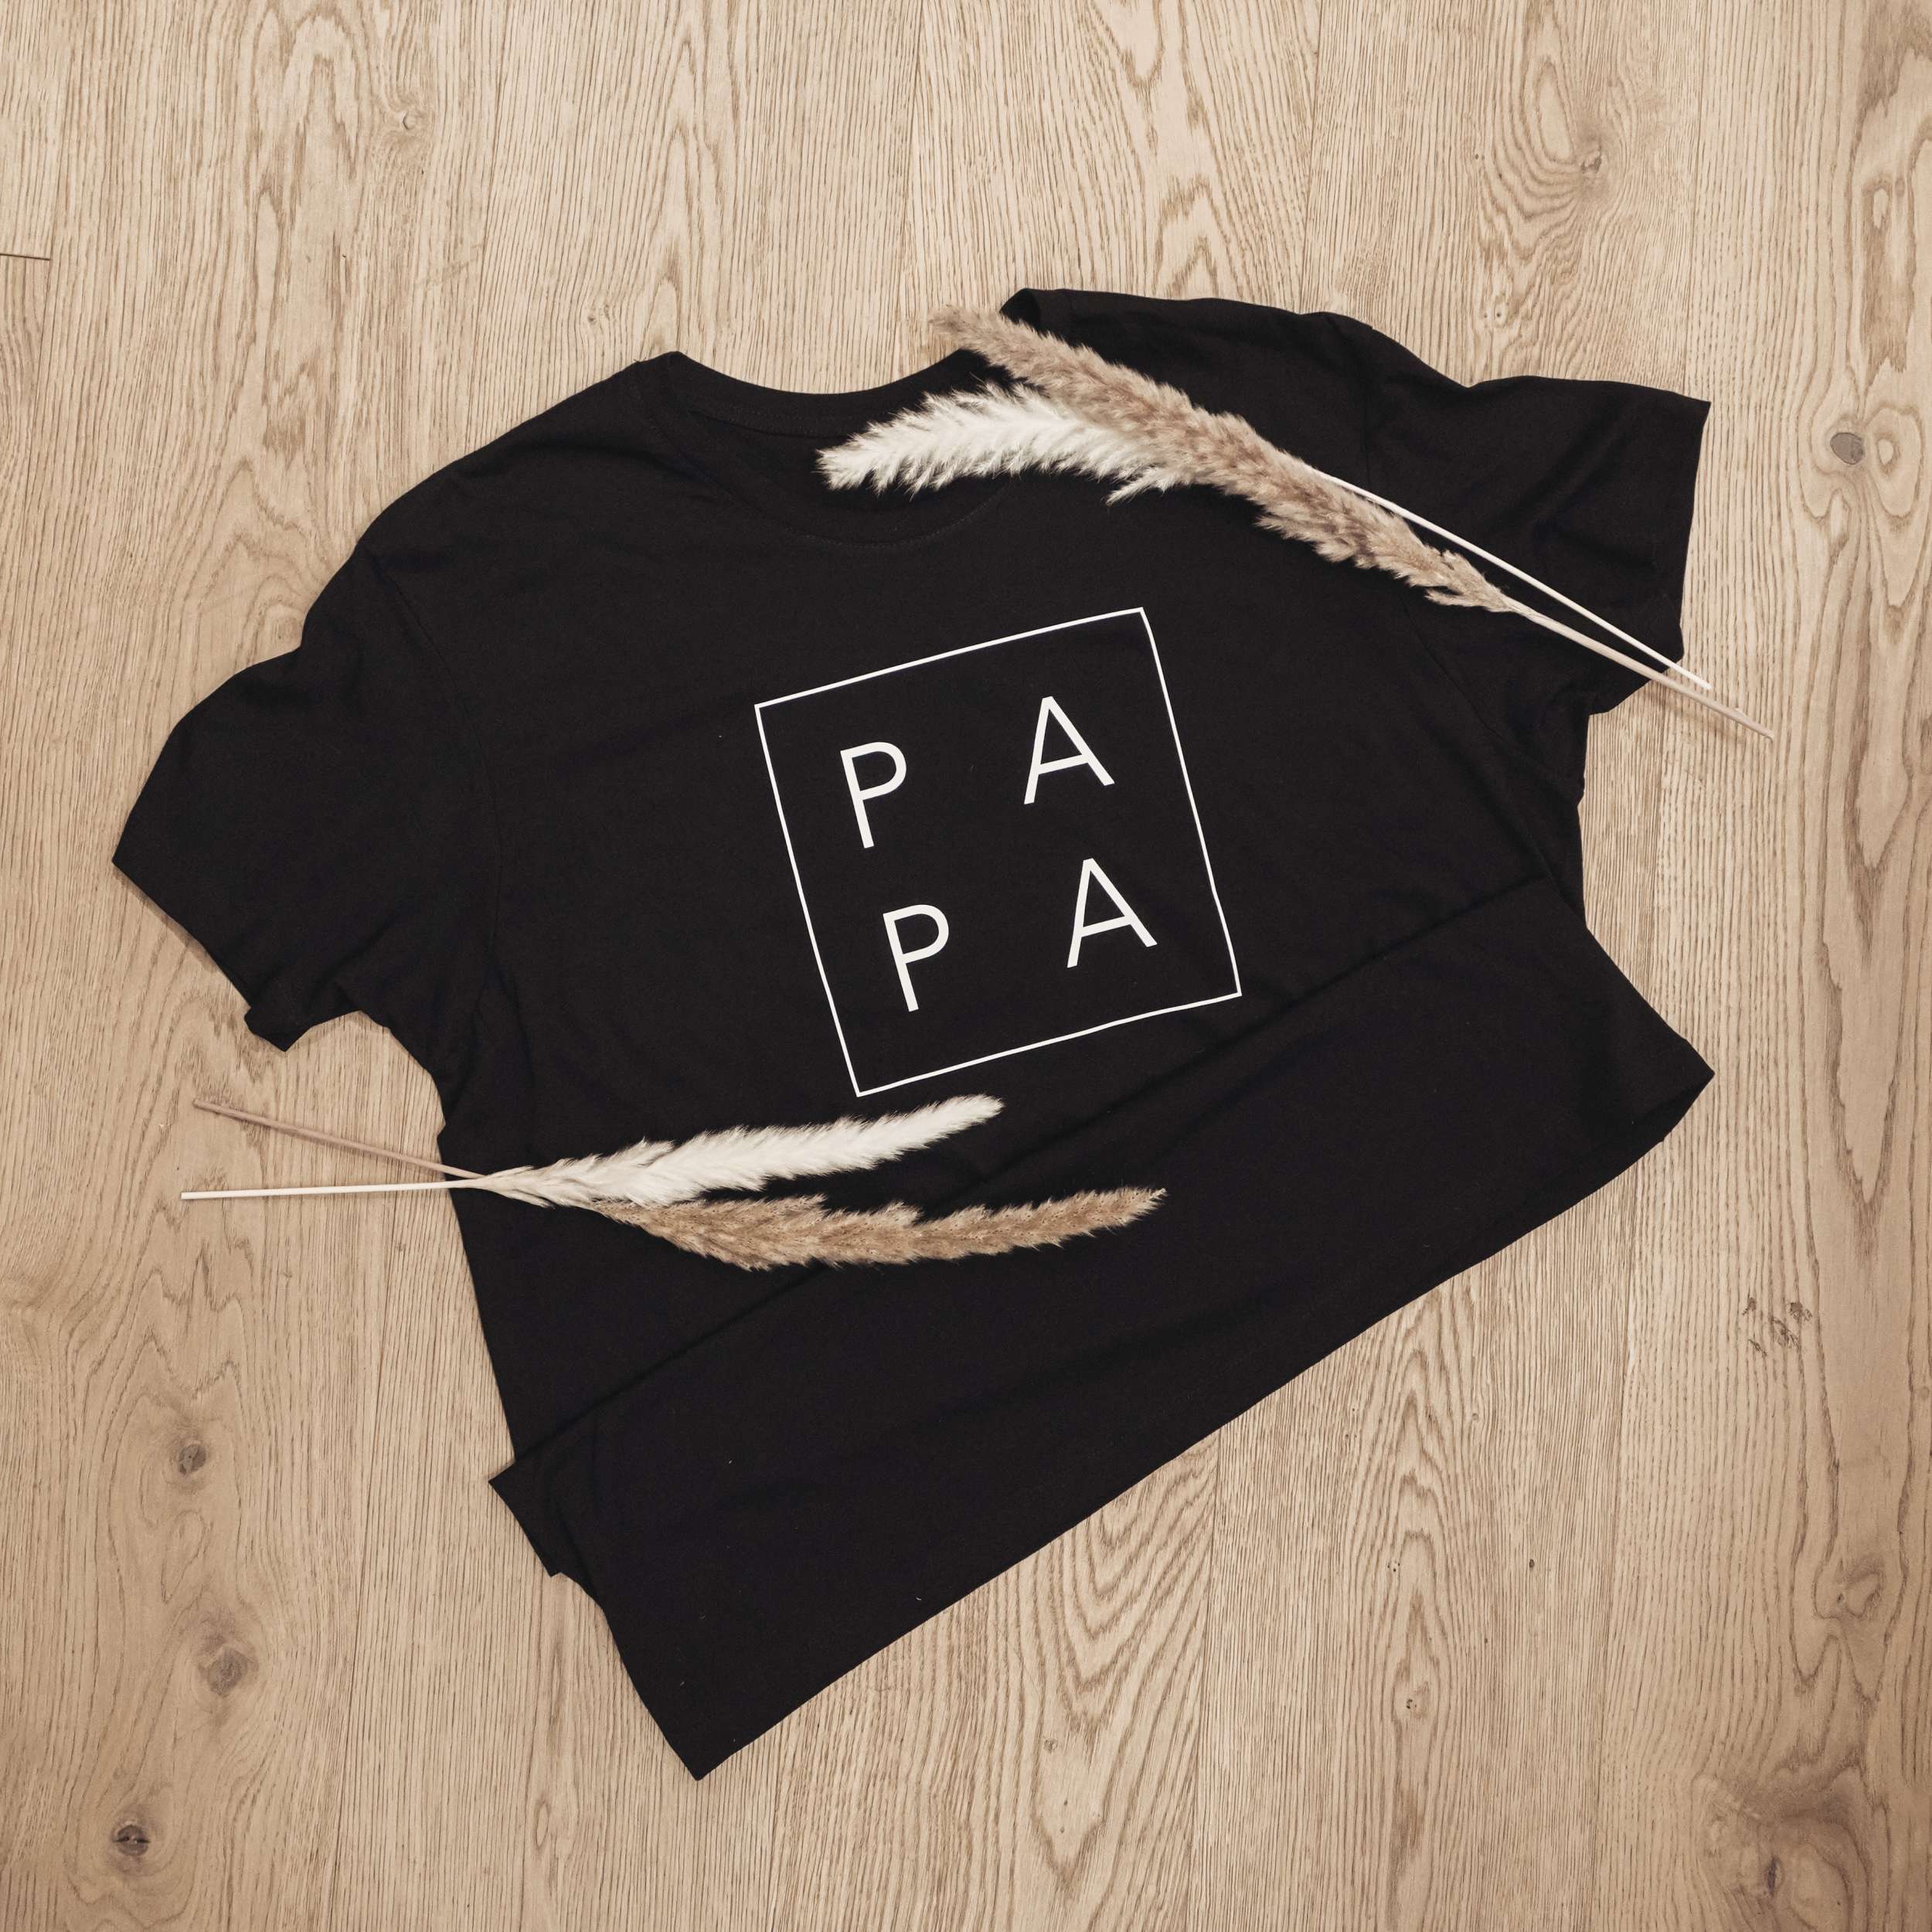 Unser T-Shirt "Papa" ist das perfekte Geschenk zum Vatertag!